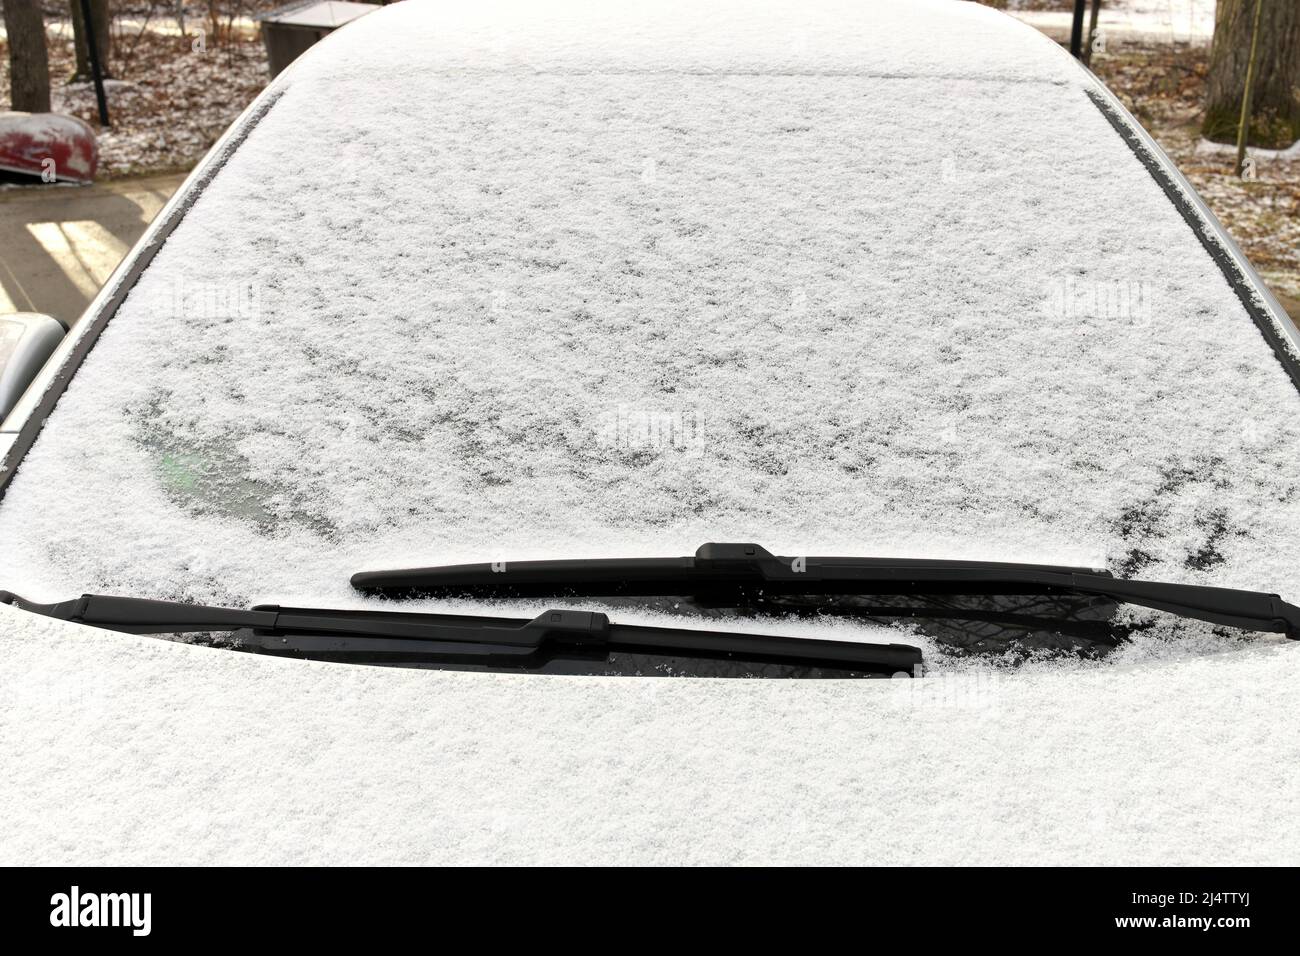 Gros plan des pellets de neige Graupel sur le pare-brise d'un véhicule Banque D'Images